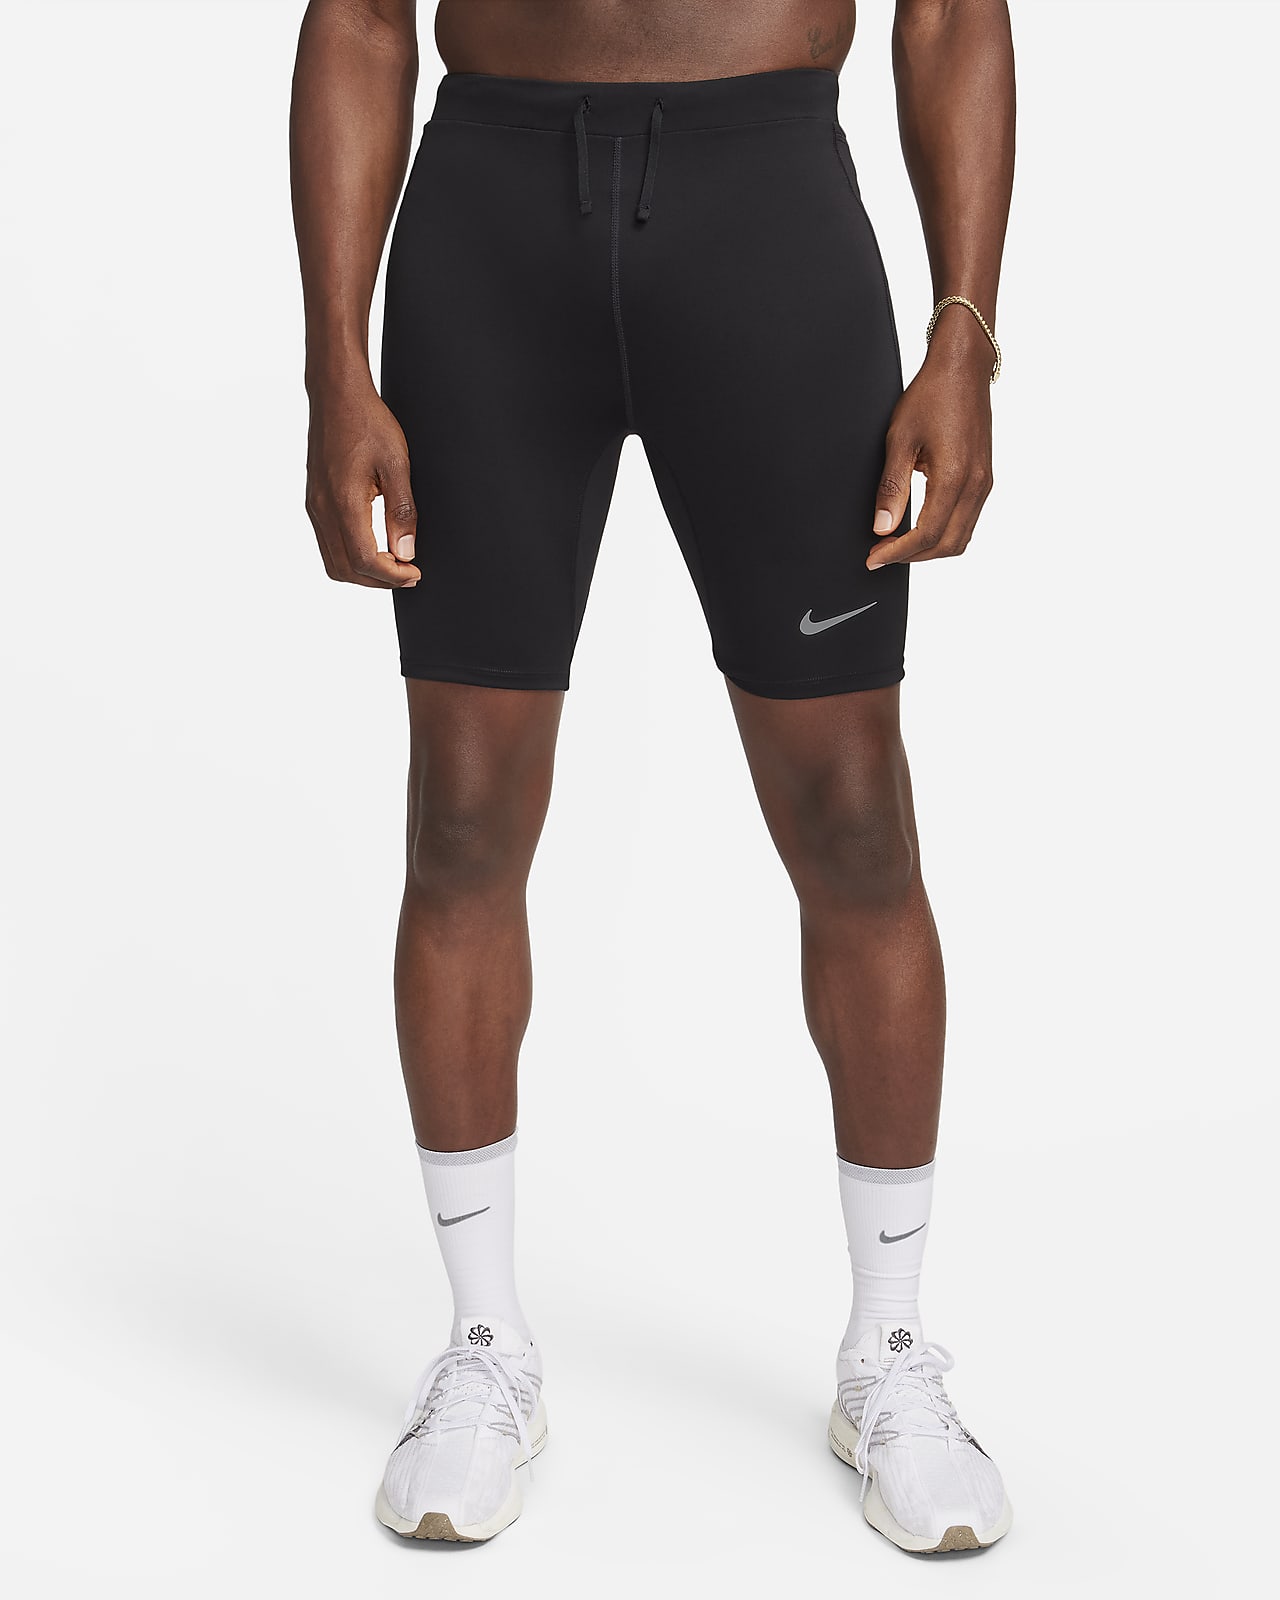 Lot of 3 Men's XL Nike NBA Compression Short Tights